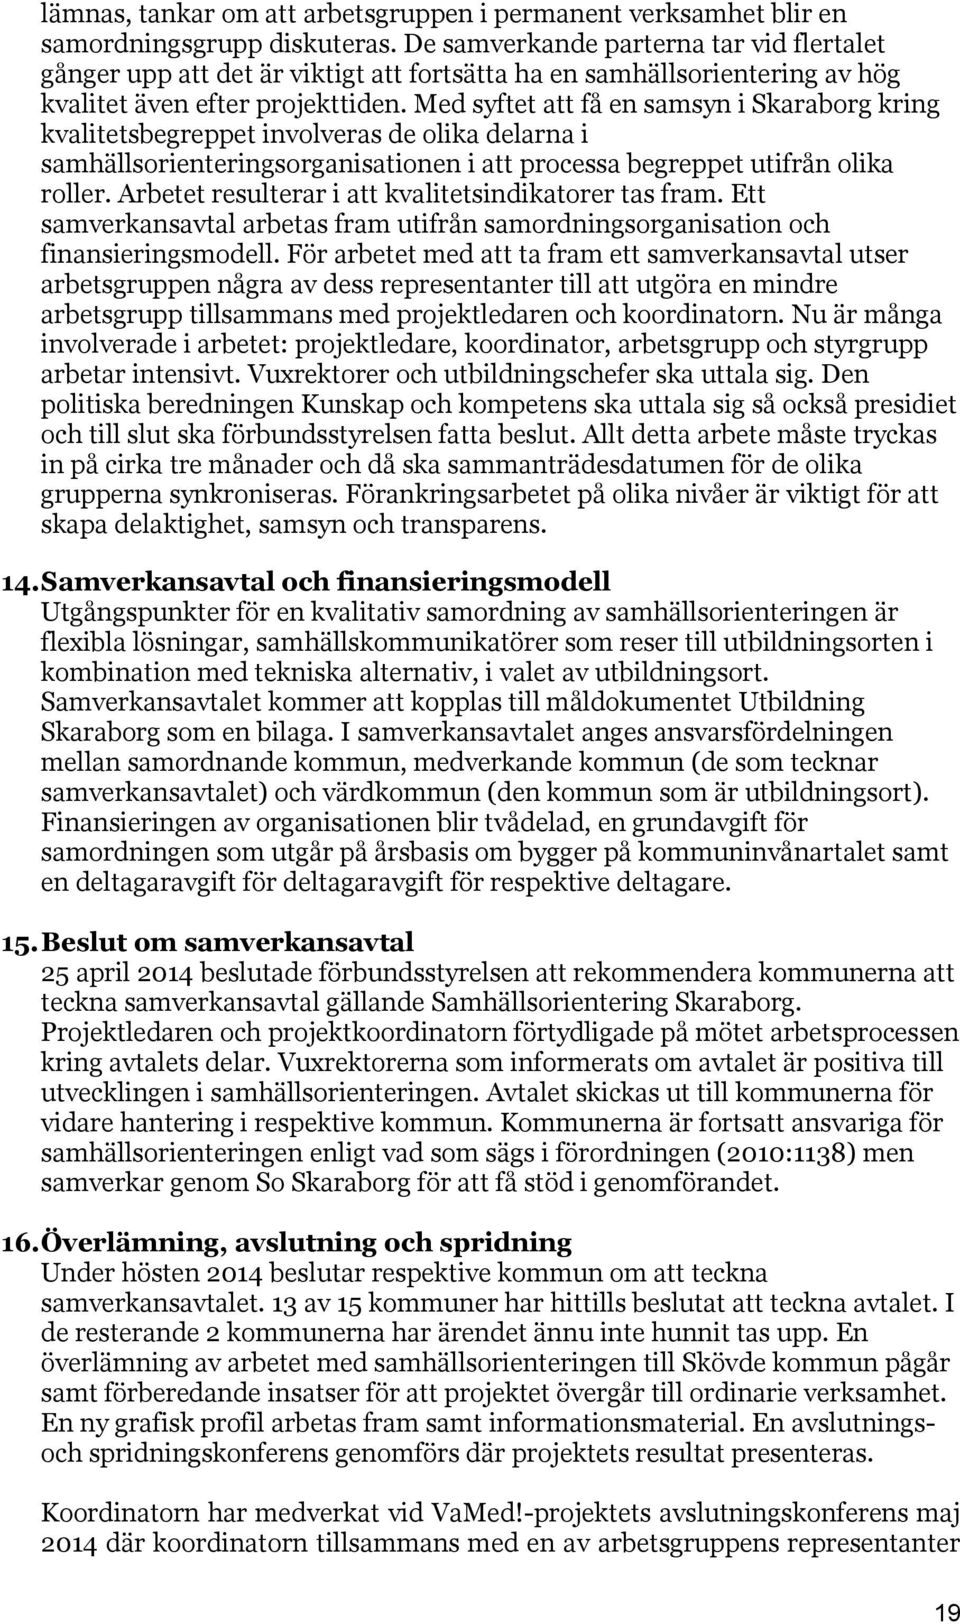 Med syftet att få en samsyn i Skaraborg kring kvalitetsbegreppet involveras de olika delarna i samhällsorienteringsorganisationen i att processa begreppet utifrån olika roller.